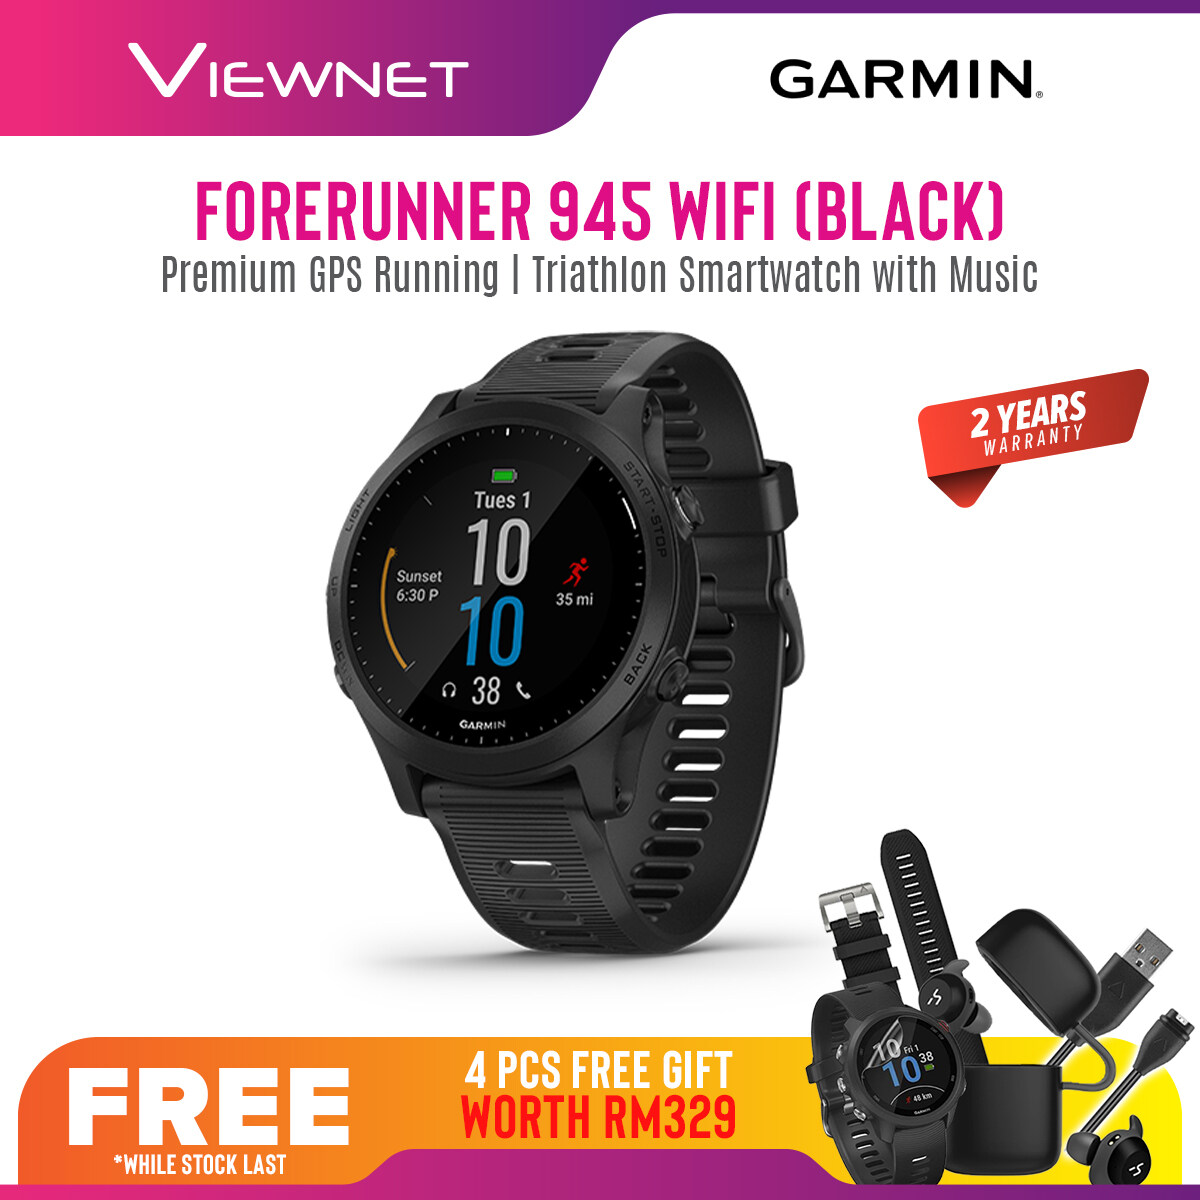 (NEW 2019) Garmin Forerunner 945 Premium GPS Running/Triathlon Smartwatch with Music